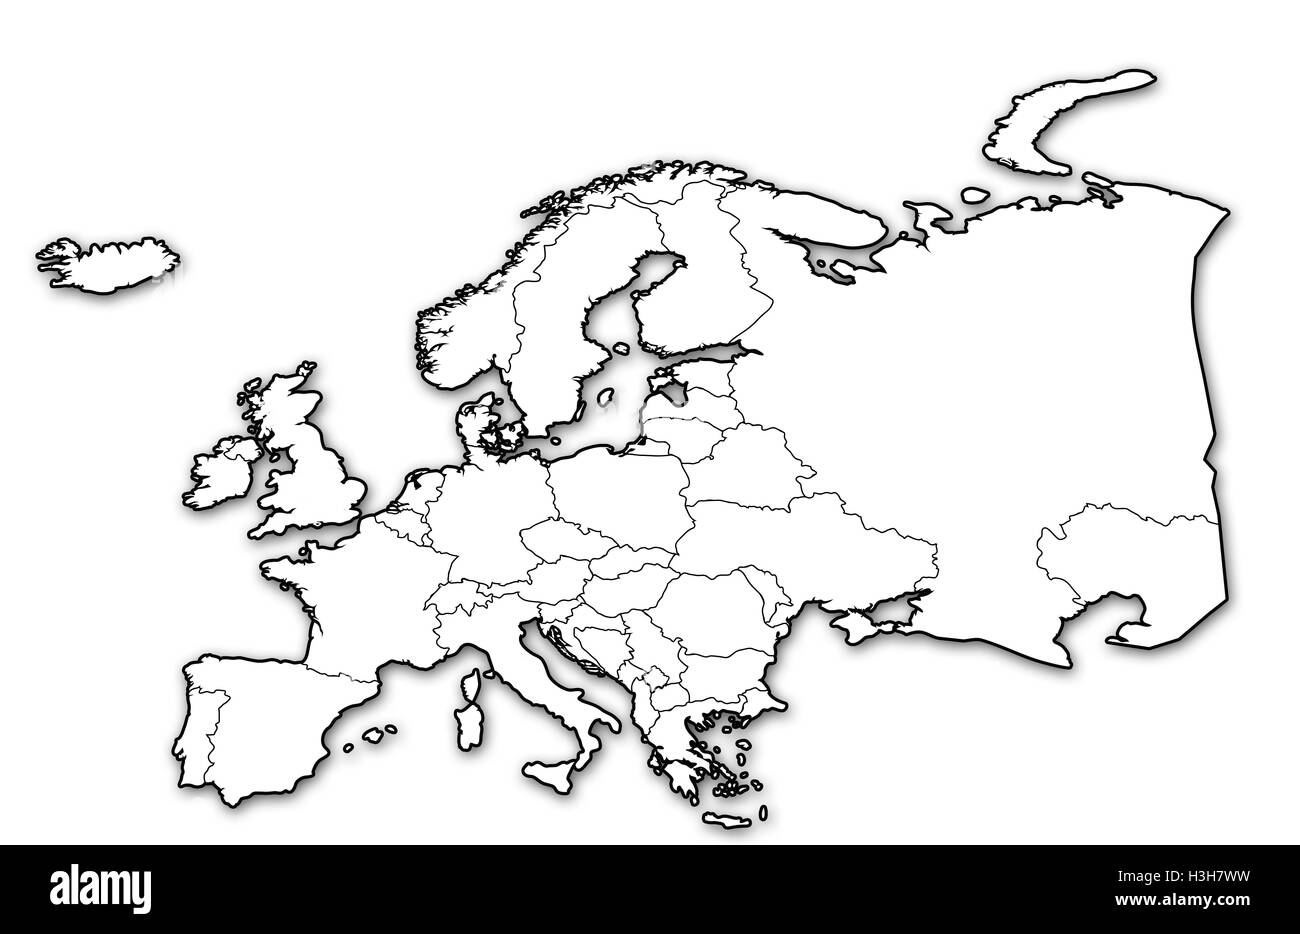 Mapa político de europa Imágenes de stock en blanco y negro - Alamy